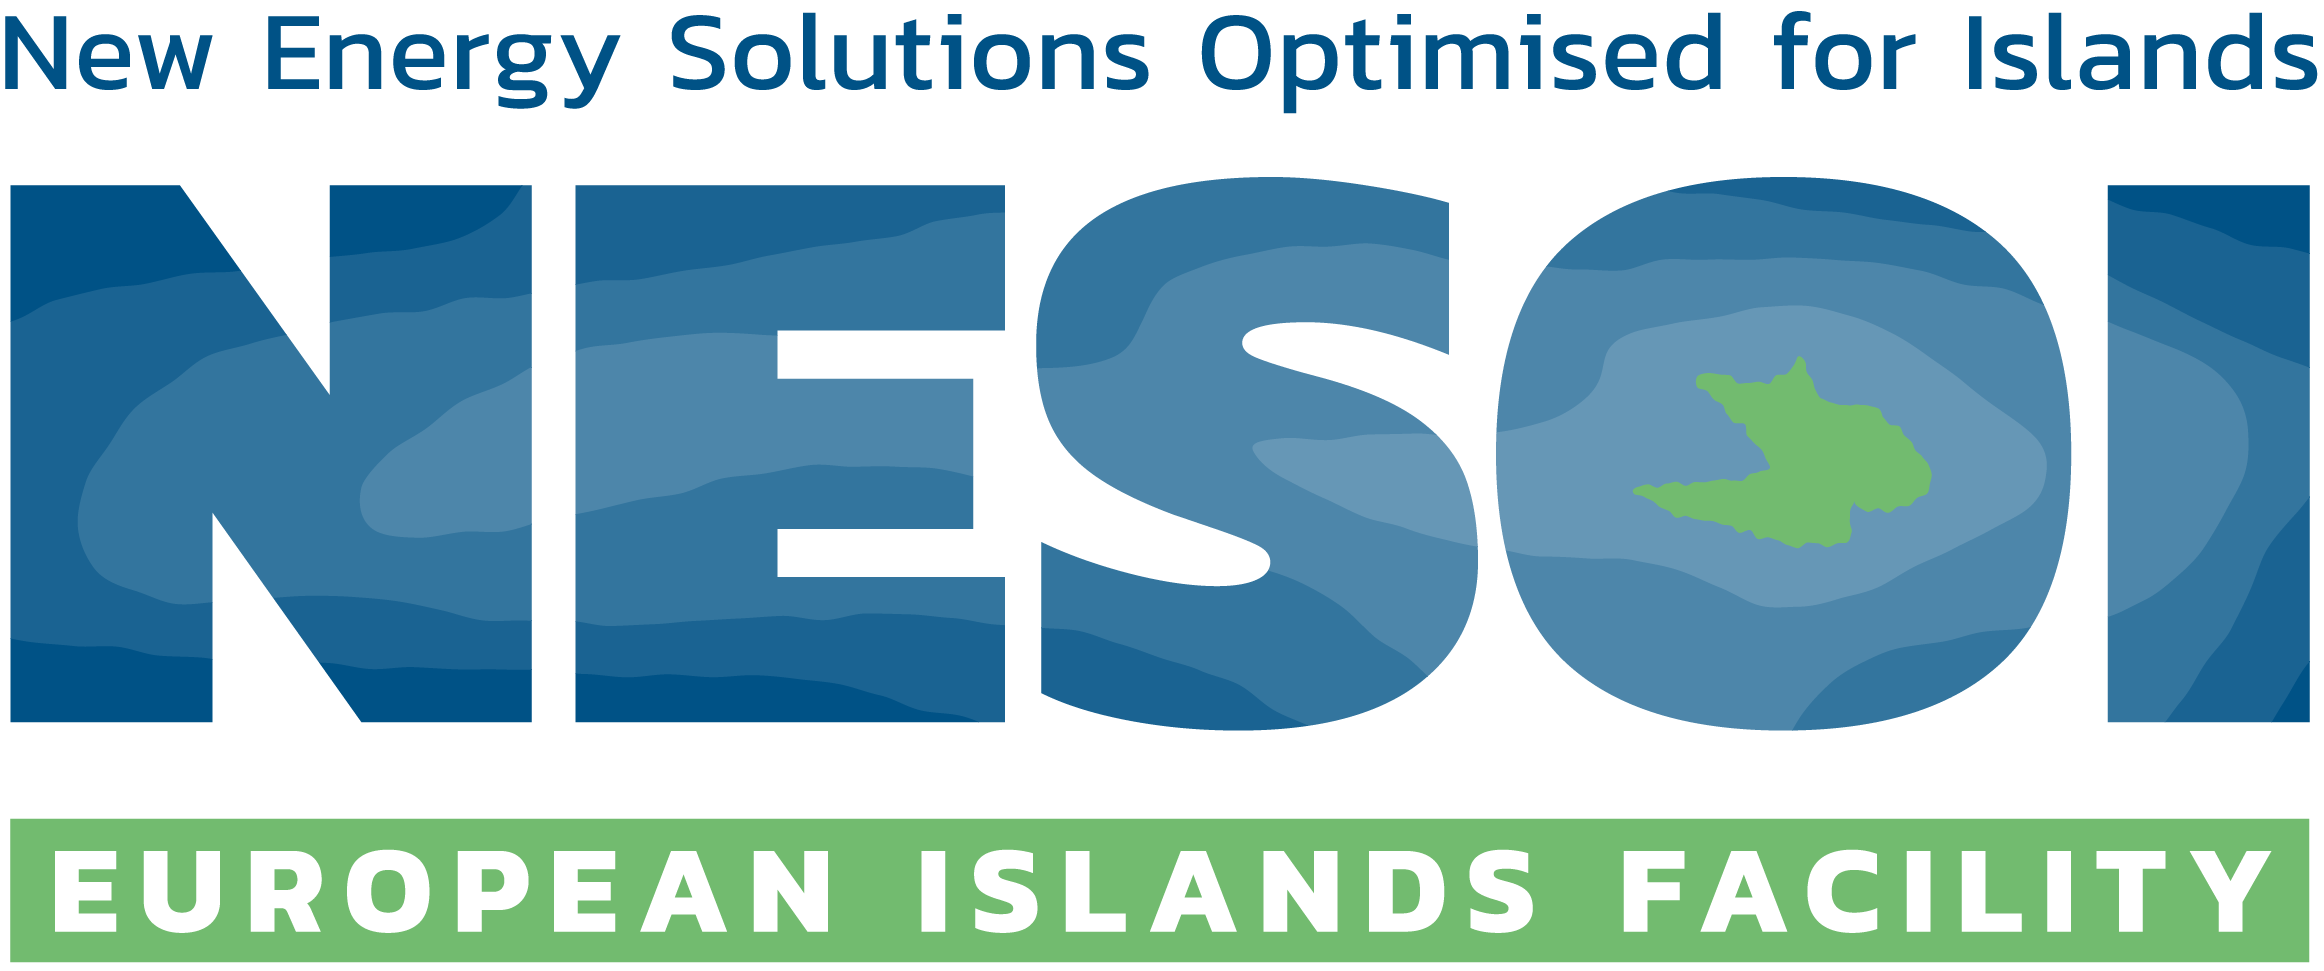 Il logo dell’iniziativa europea NESOI (New Energy Solutions Optimized for Islands) con la scritta in blu e in verde 